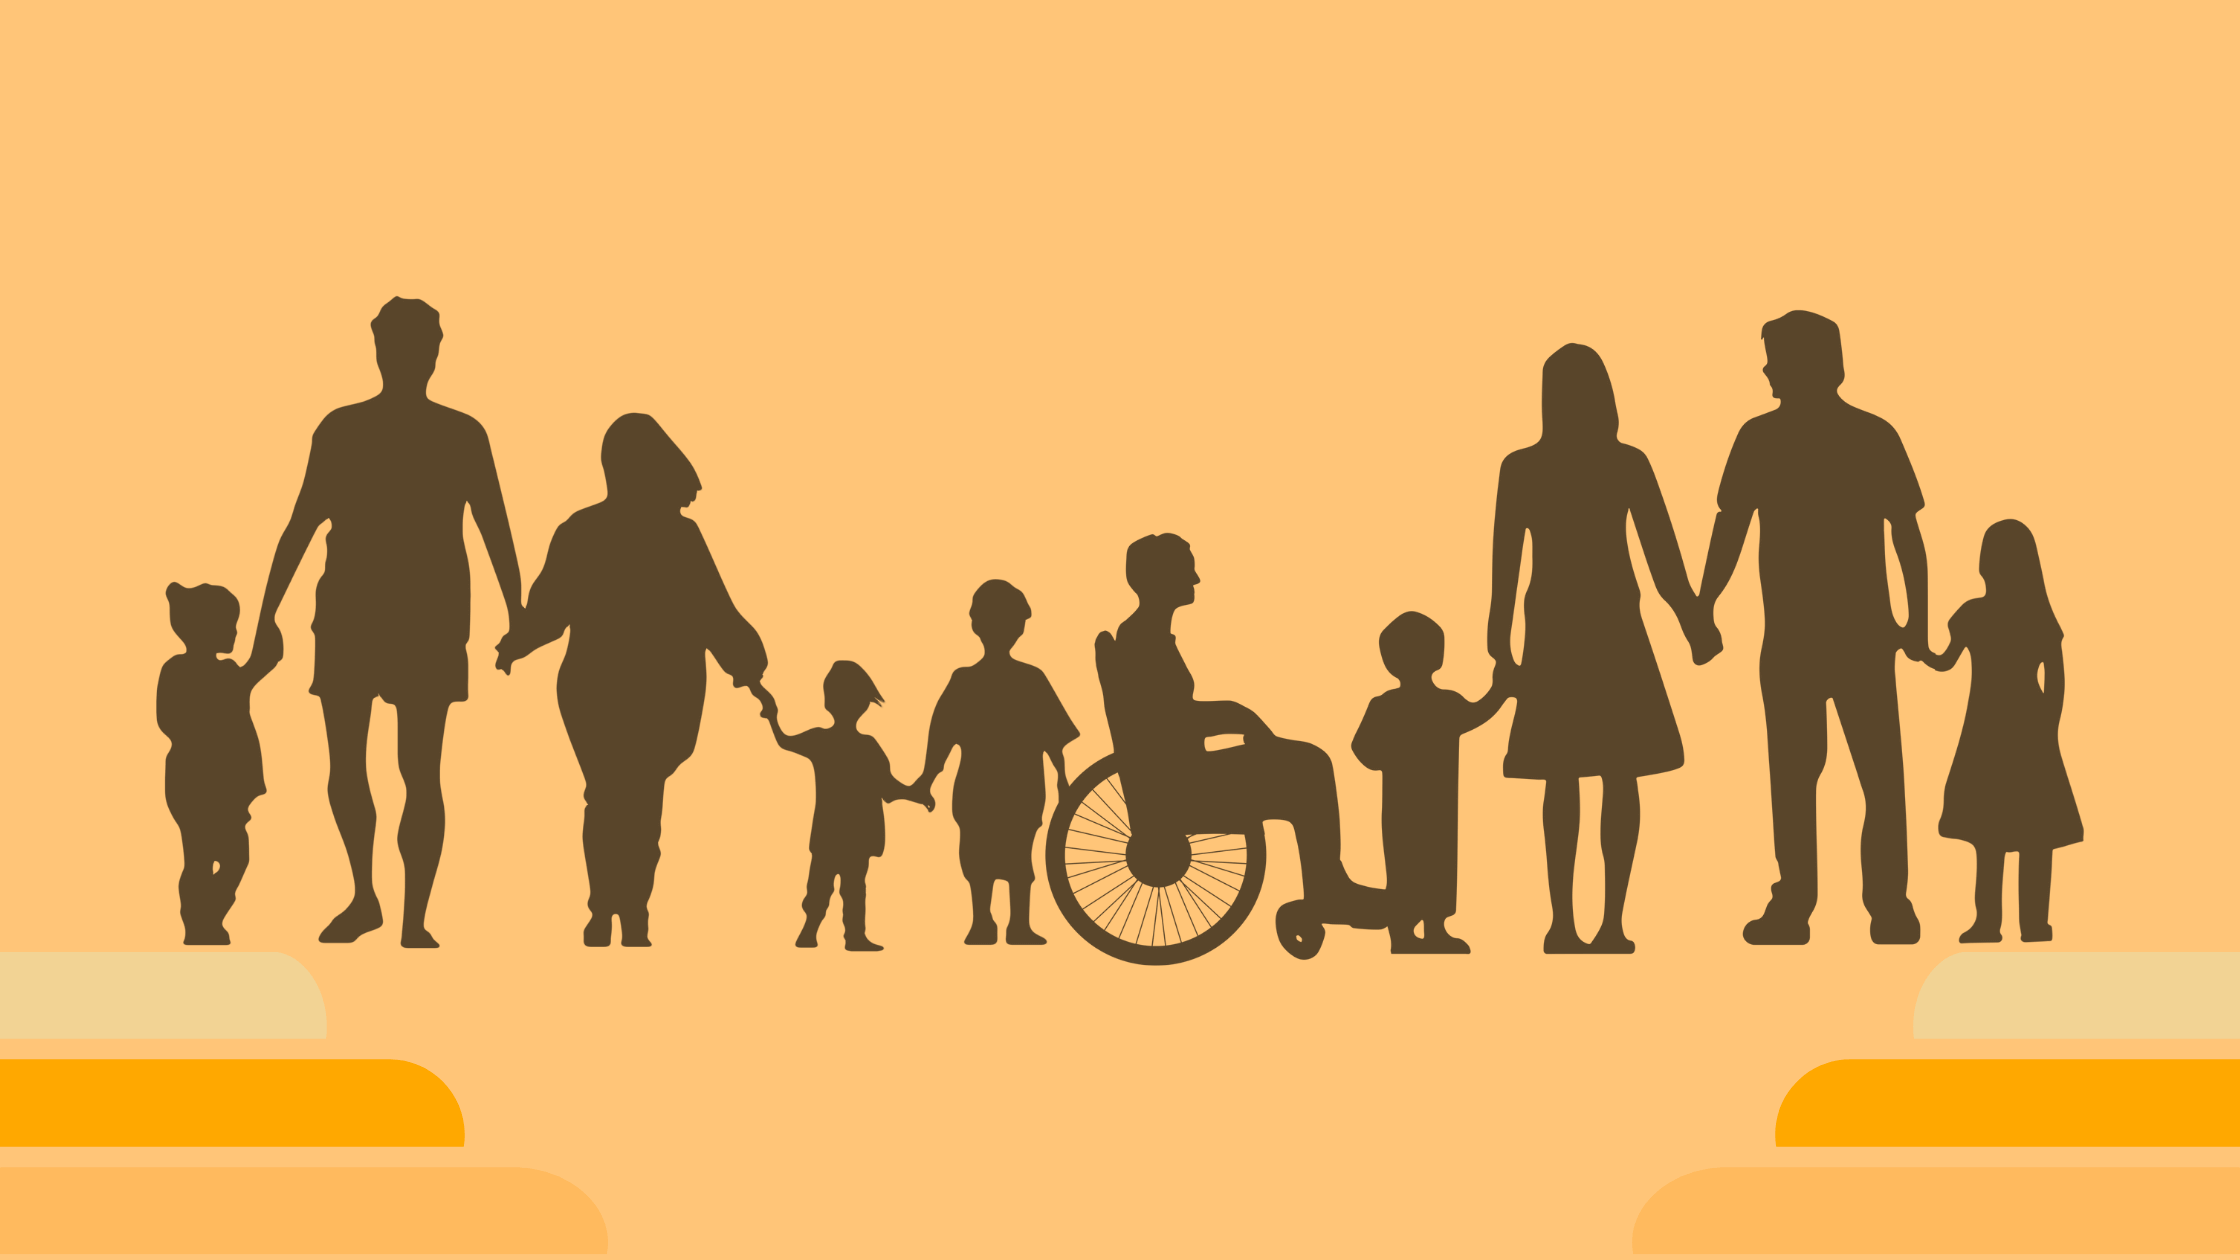 Avviso pubblico per la presentazione delle domande per l’assegnazione di contributi finalizzati alla realizzazione di interventi a favore di persone con disabilità grave prive del sostegno familiare residenti nei Comuni afferenti l’Ambito